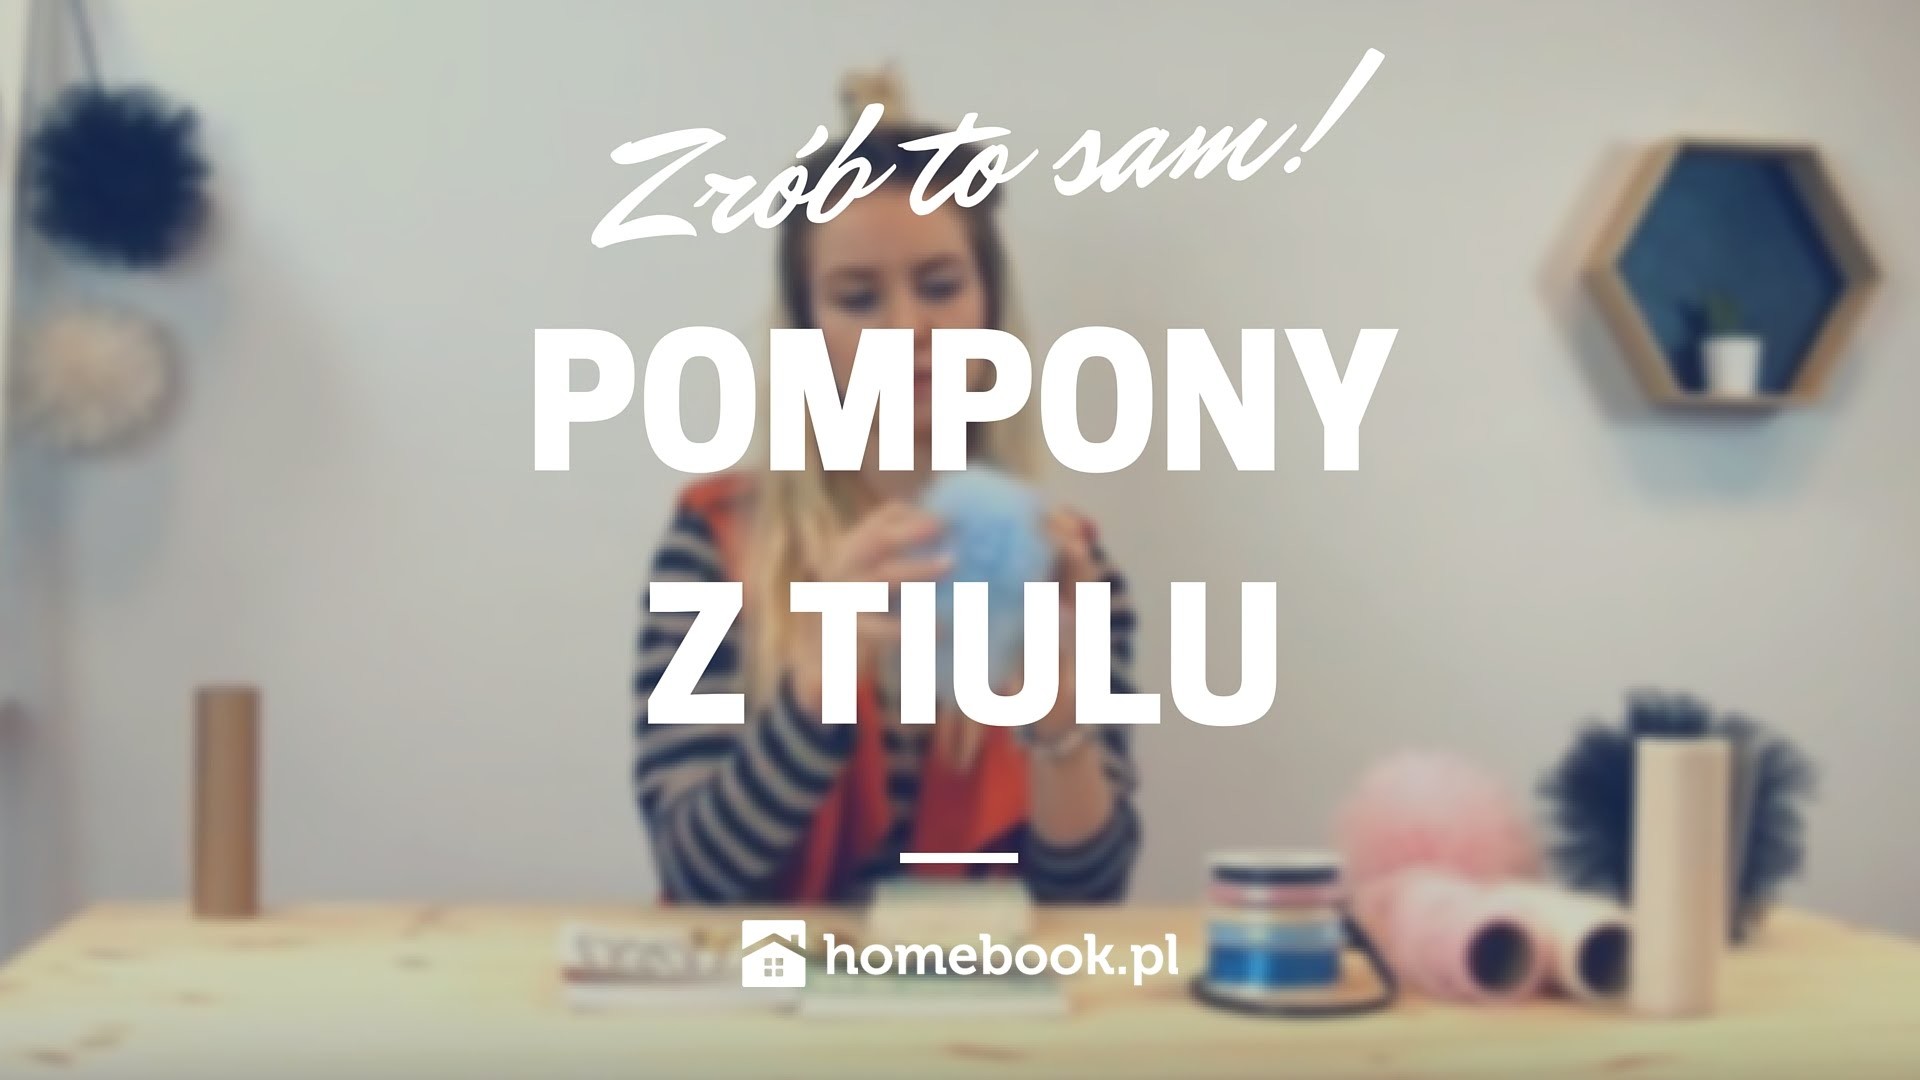 Jak zrobić pompony z tiulu? #DIY #POMPONY #TIULOWE